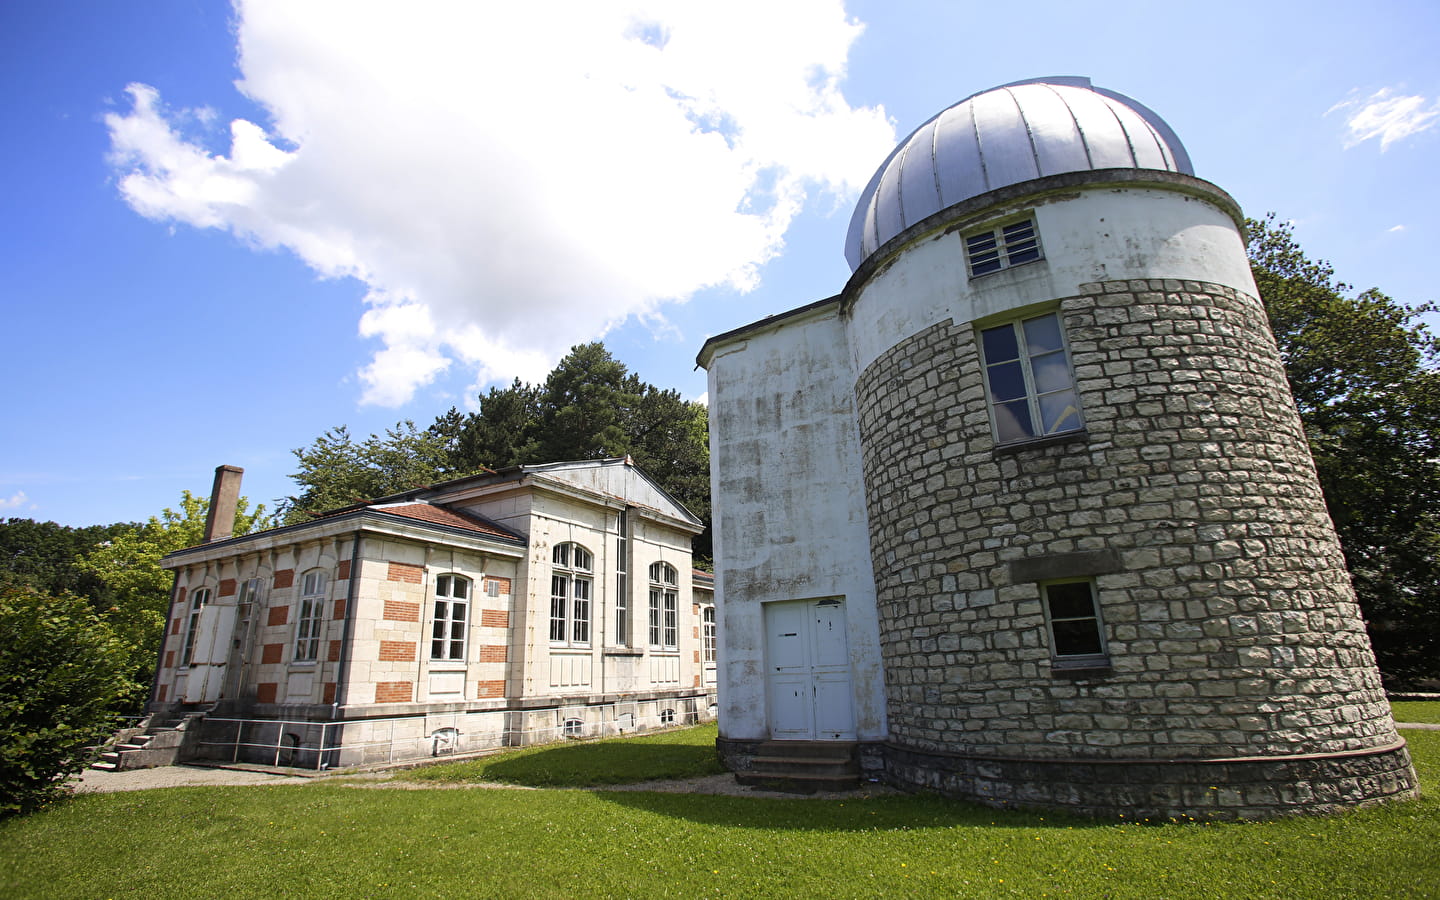 L'Observatoire de Besançon